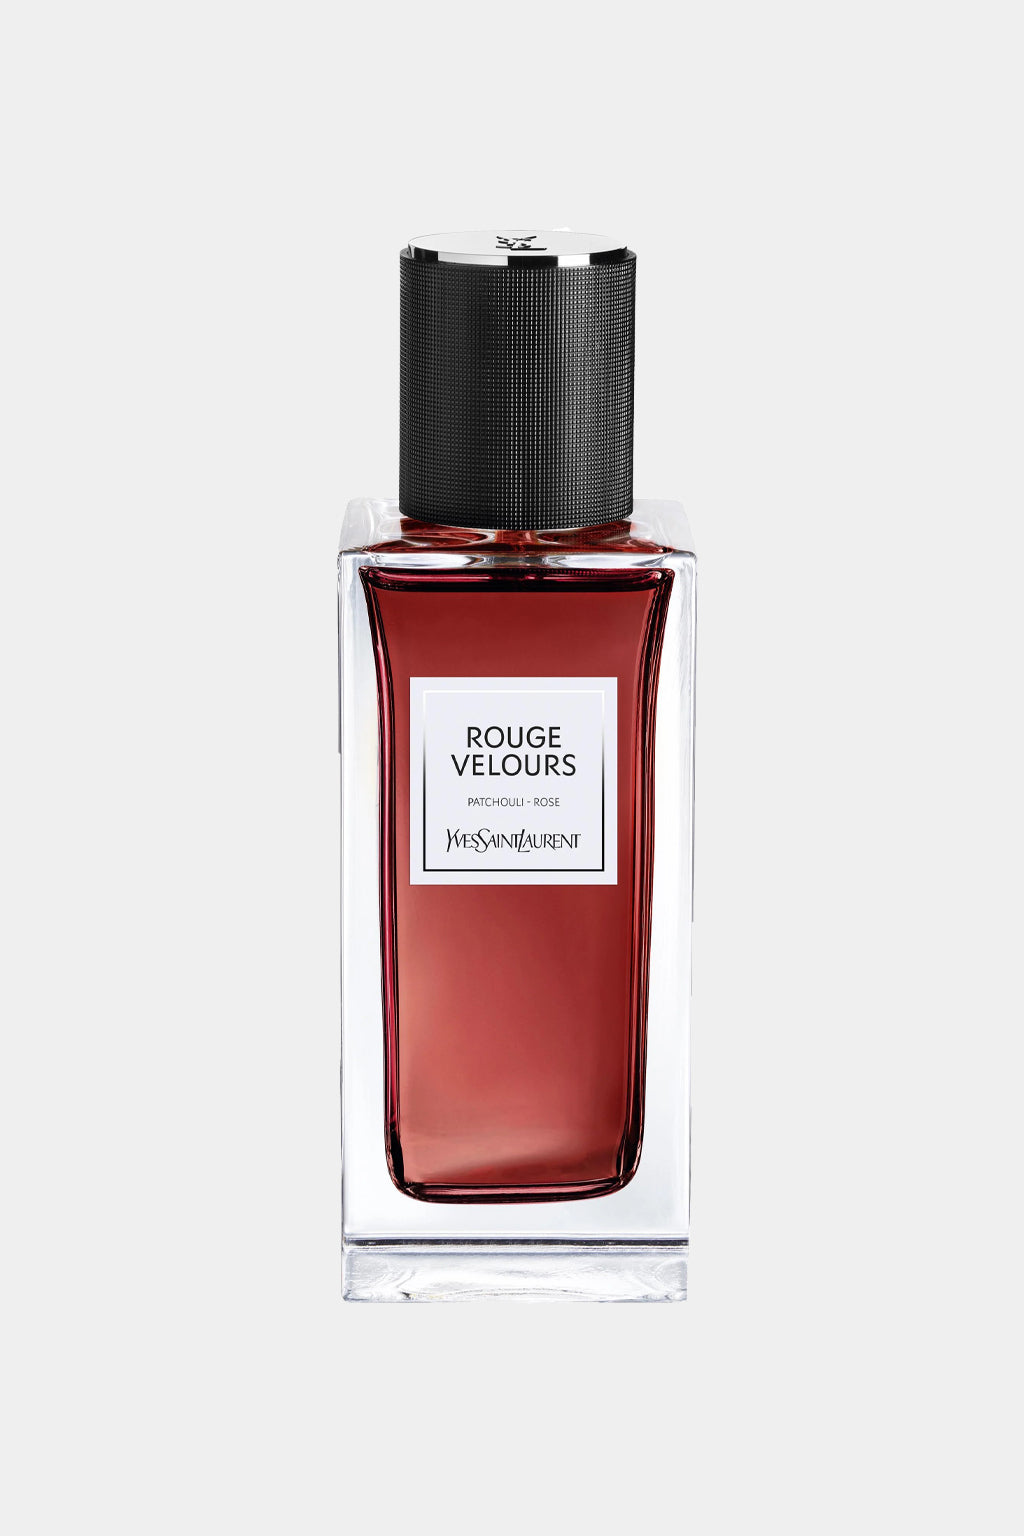 Yves Saint Laurent - Rouge Velours Eau de Parfum